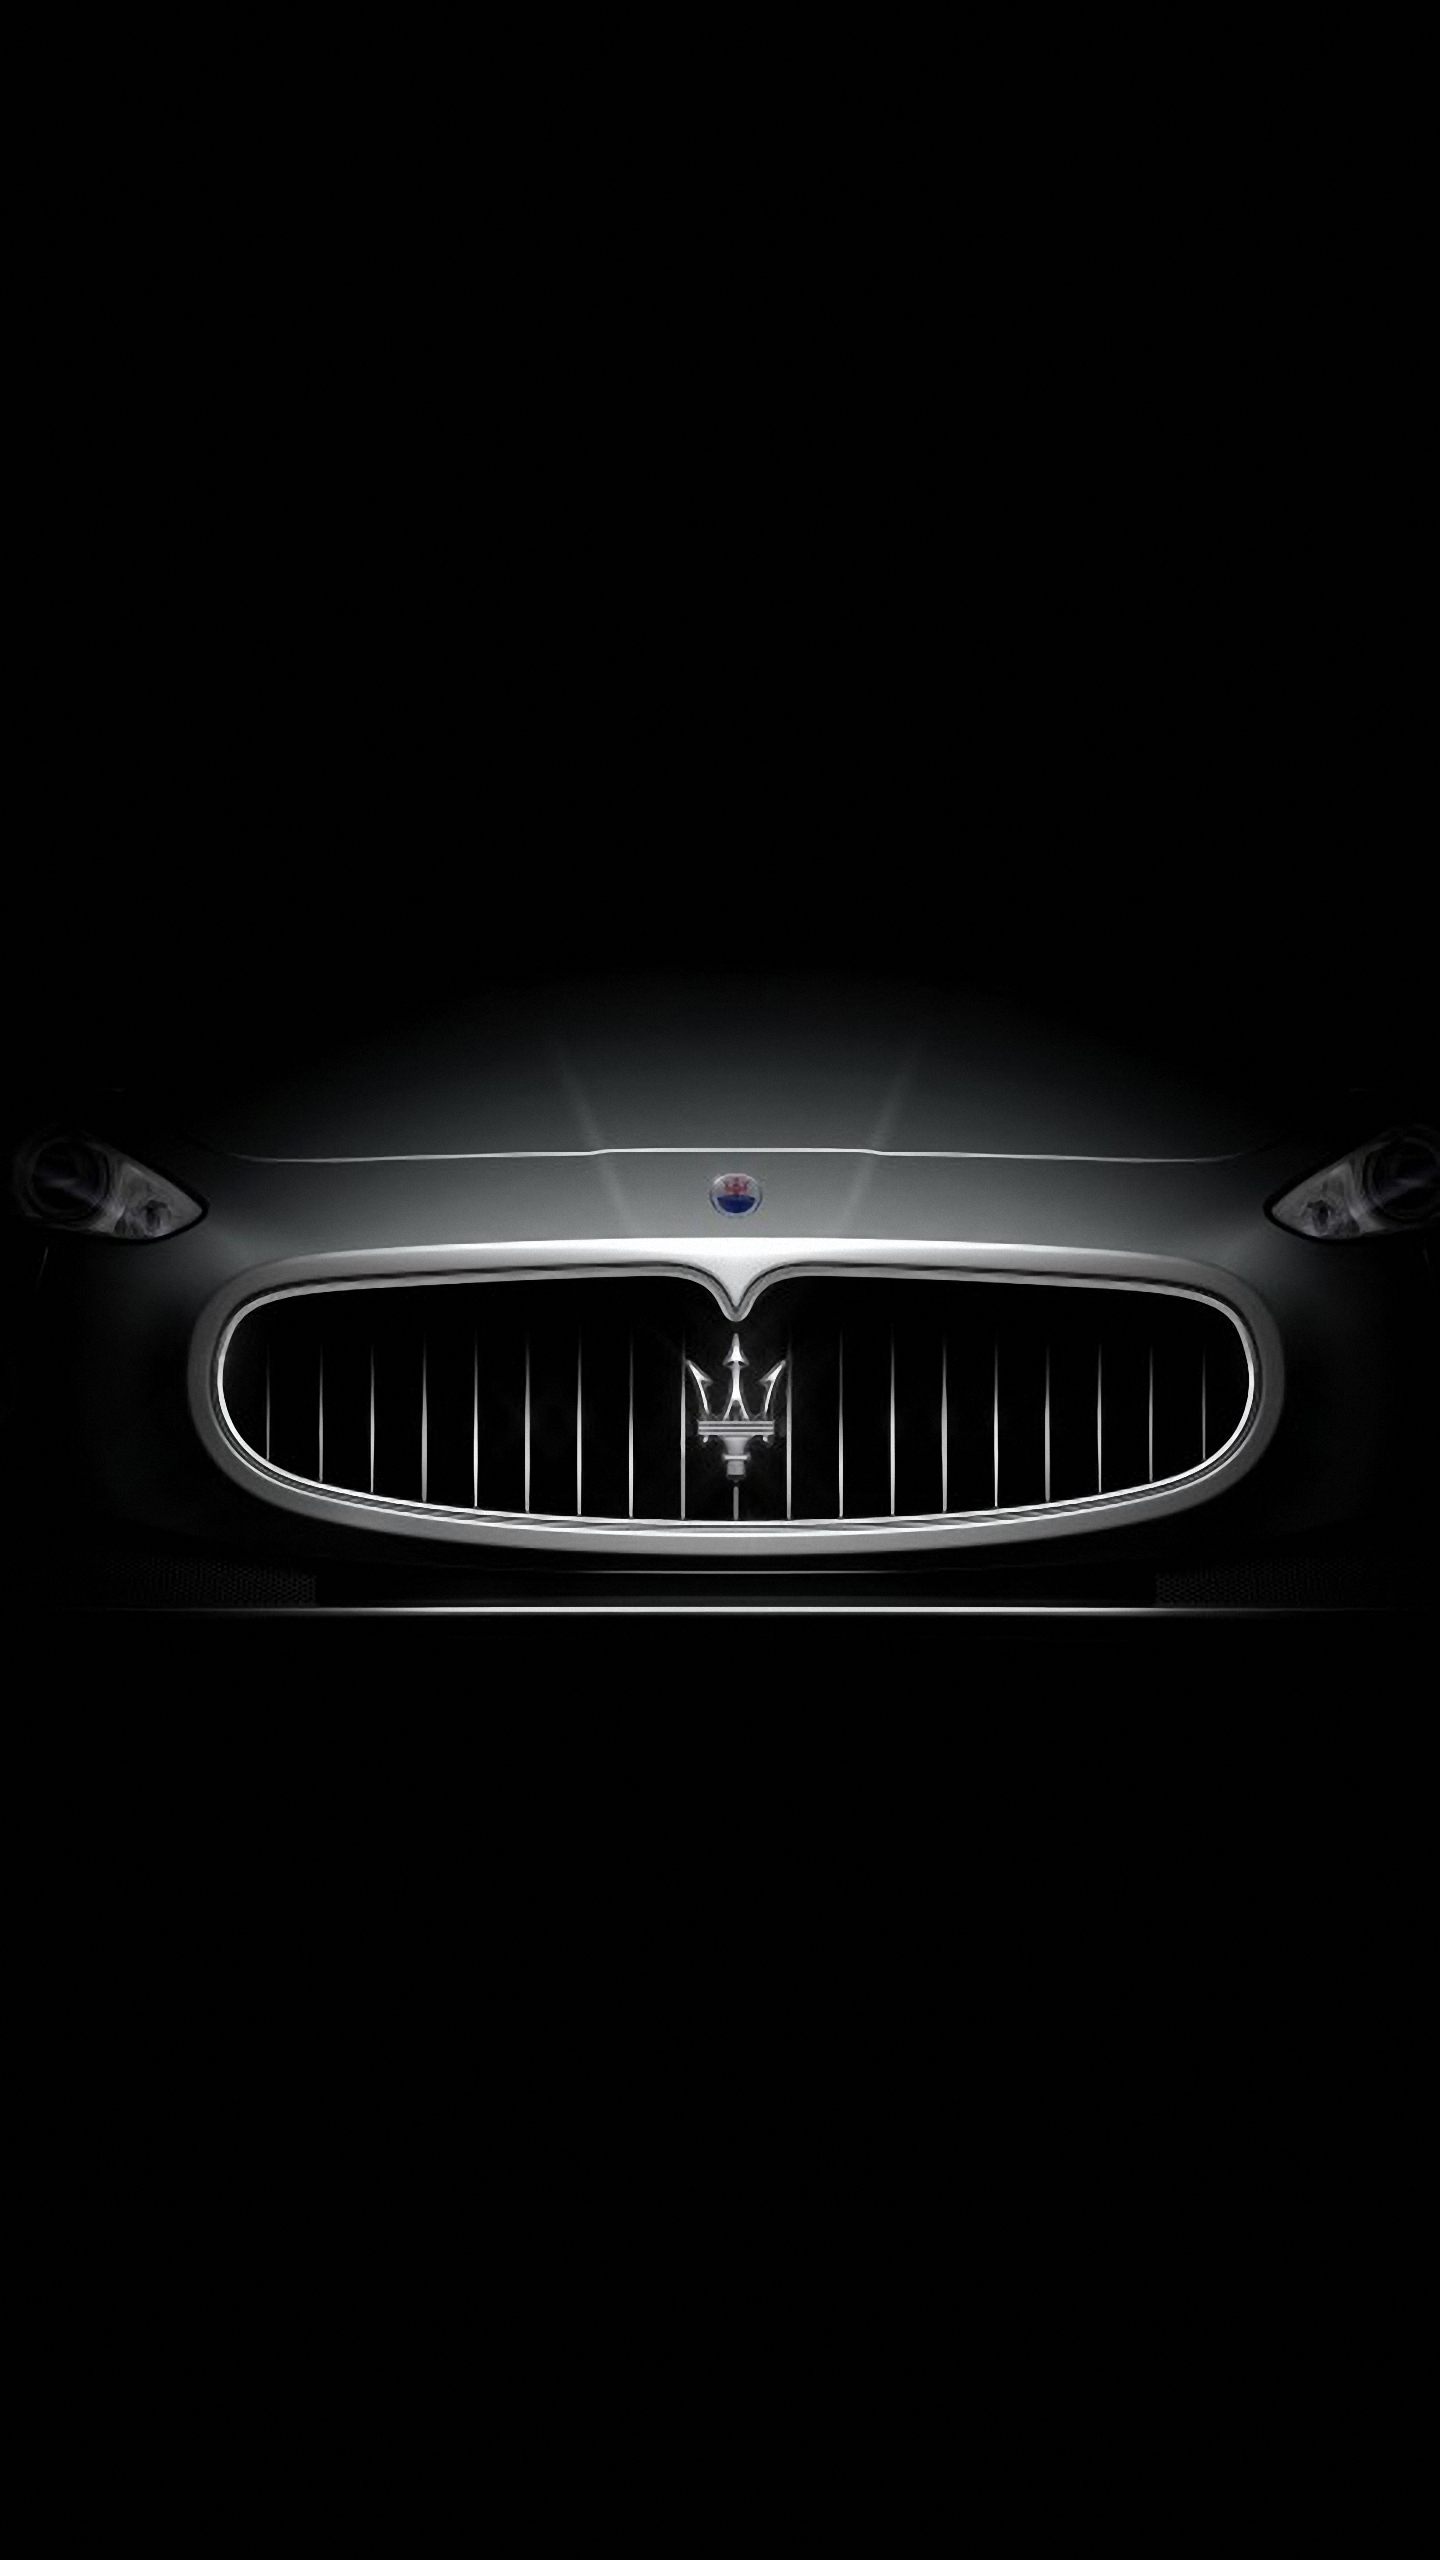 S6 HD Maserati Granturismo Samsung Galaxy Wallpaper